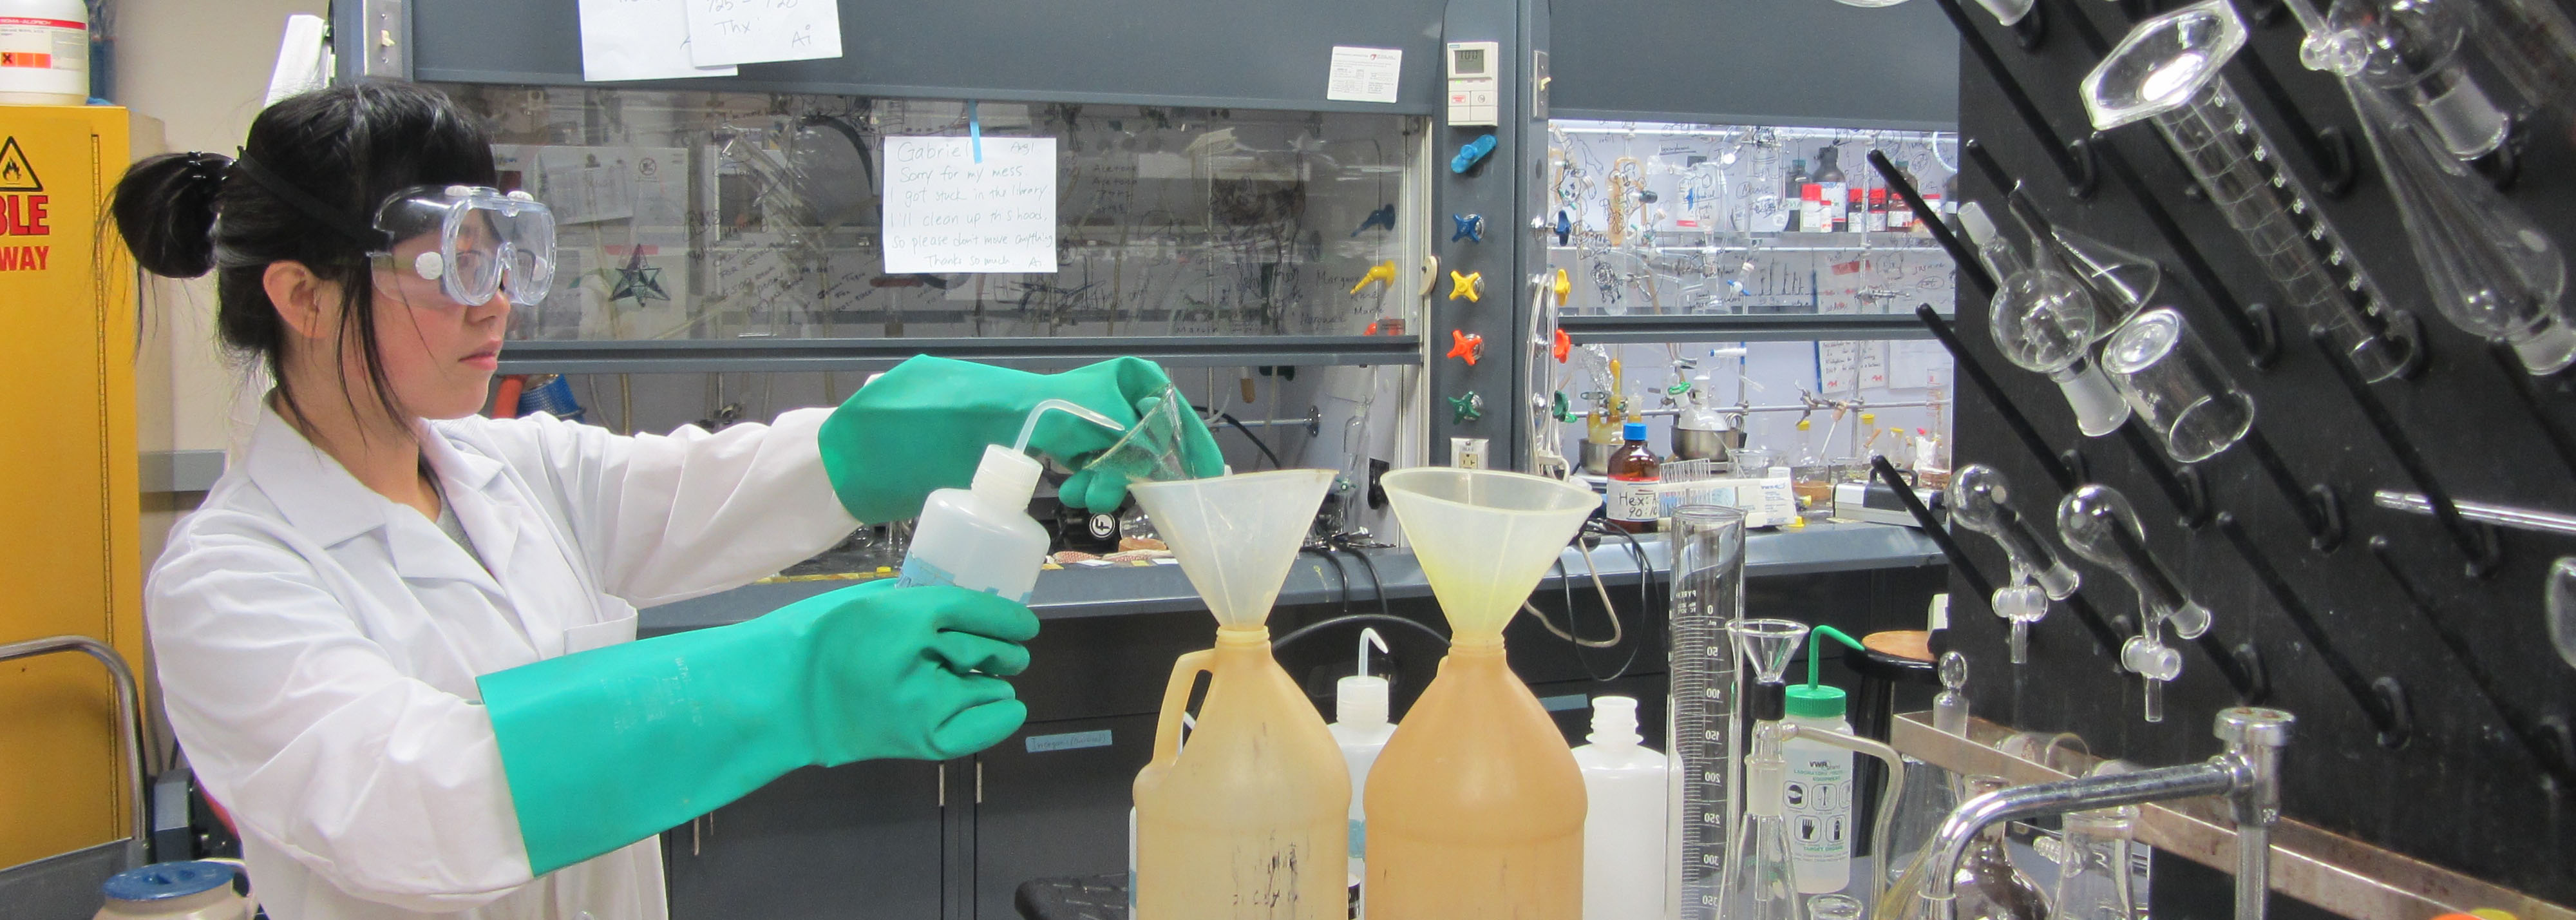 化学励耘实验班UTEP暑期科研项目